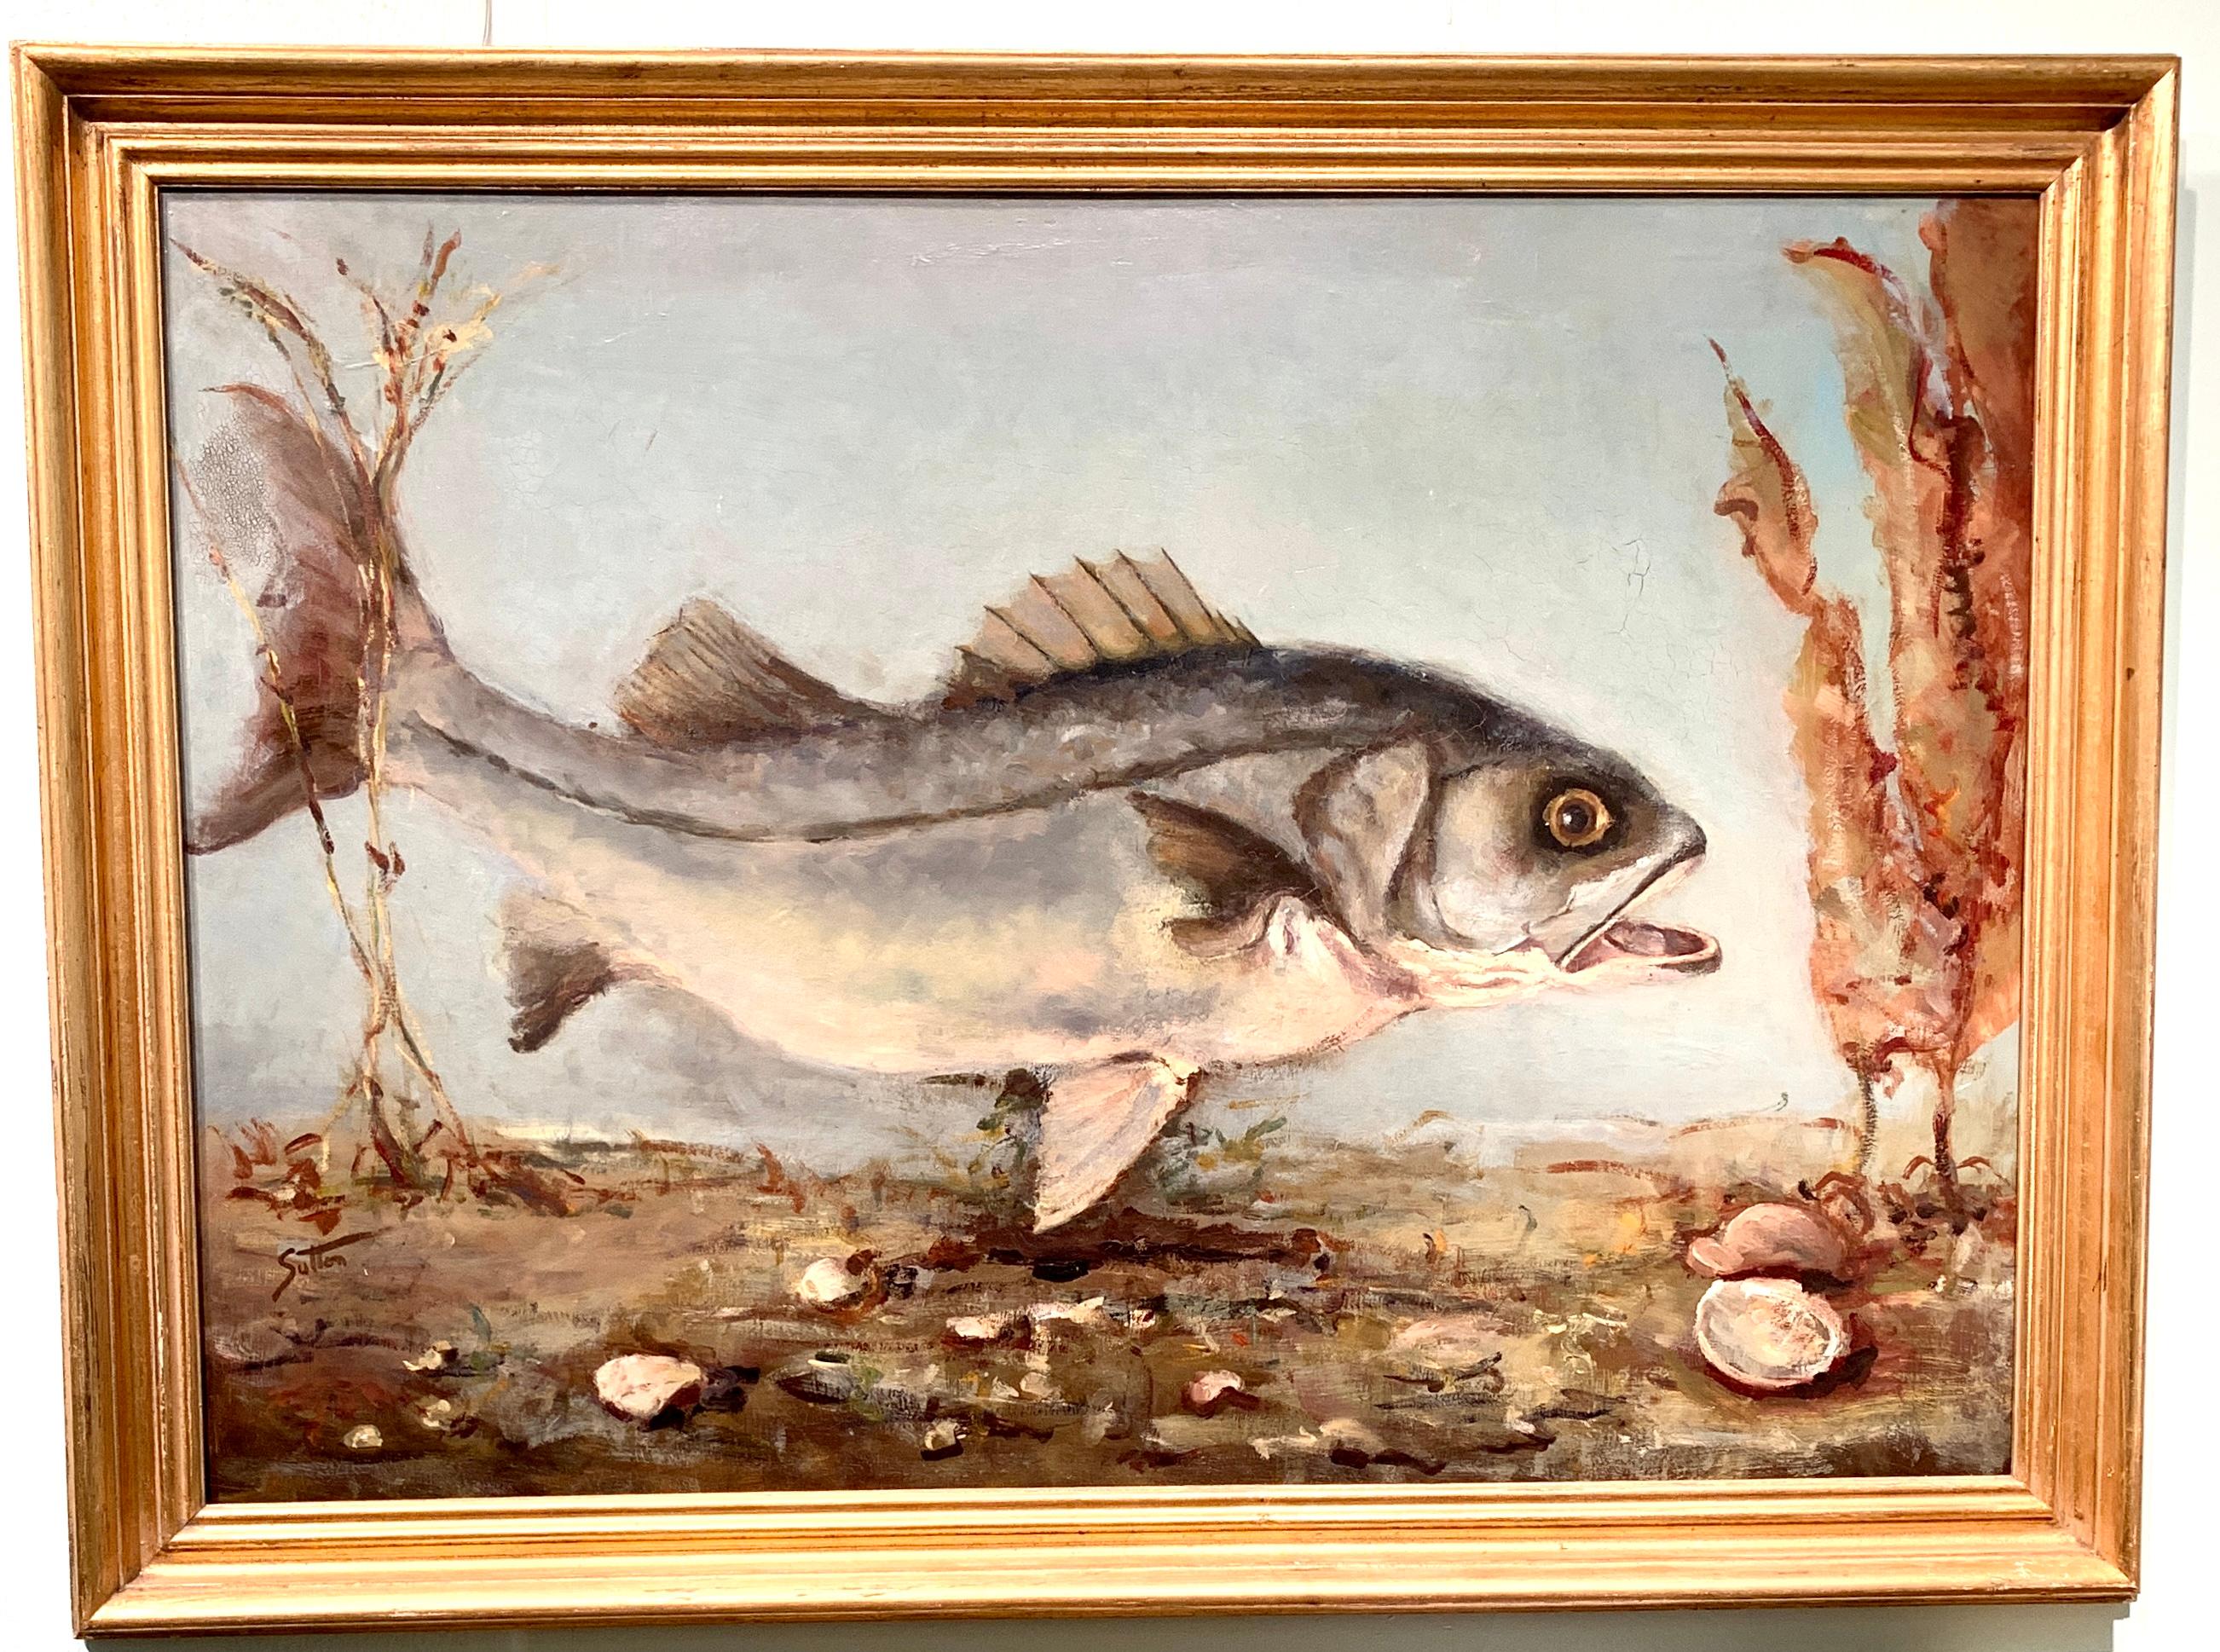 Amerikanisches impressionistisches Porträt eines schwimmenden Fisches, möglicherweise ein Schilfrohr oder Bass